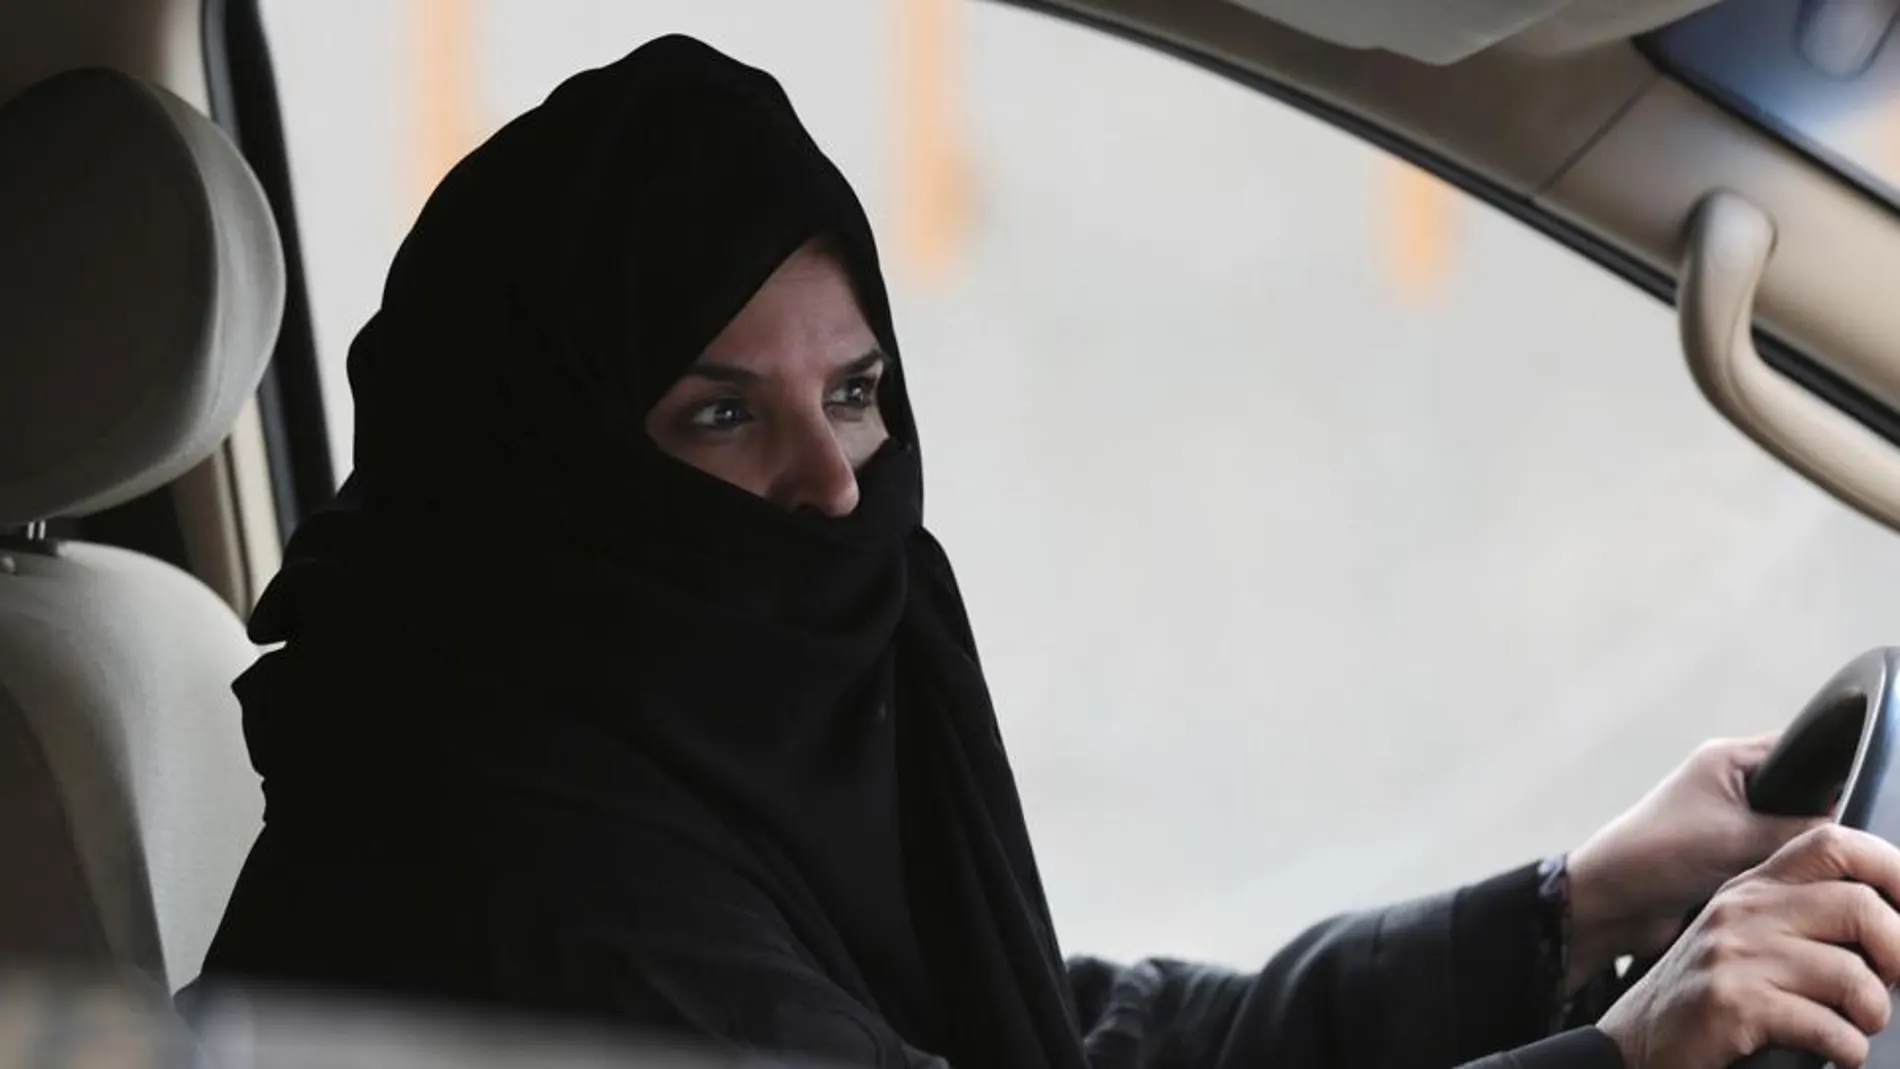 Una mujer conduce un coche en una autopista de Riad, Arabia Saudí, durante una campaña de protesta por los derechos de las mujeres